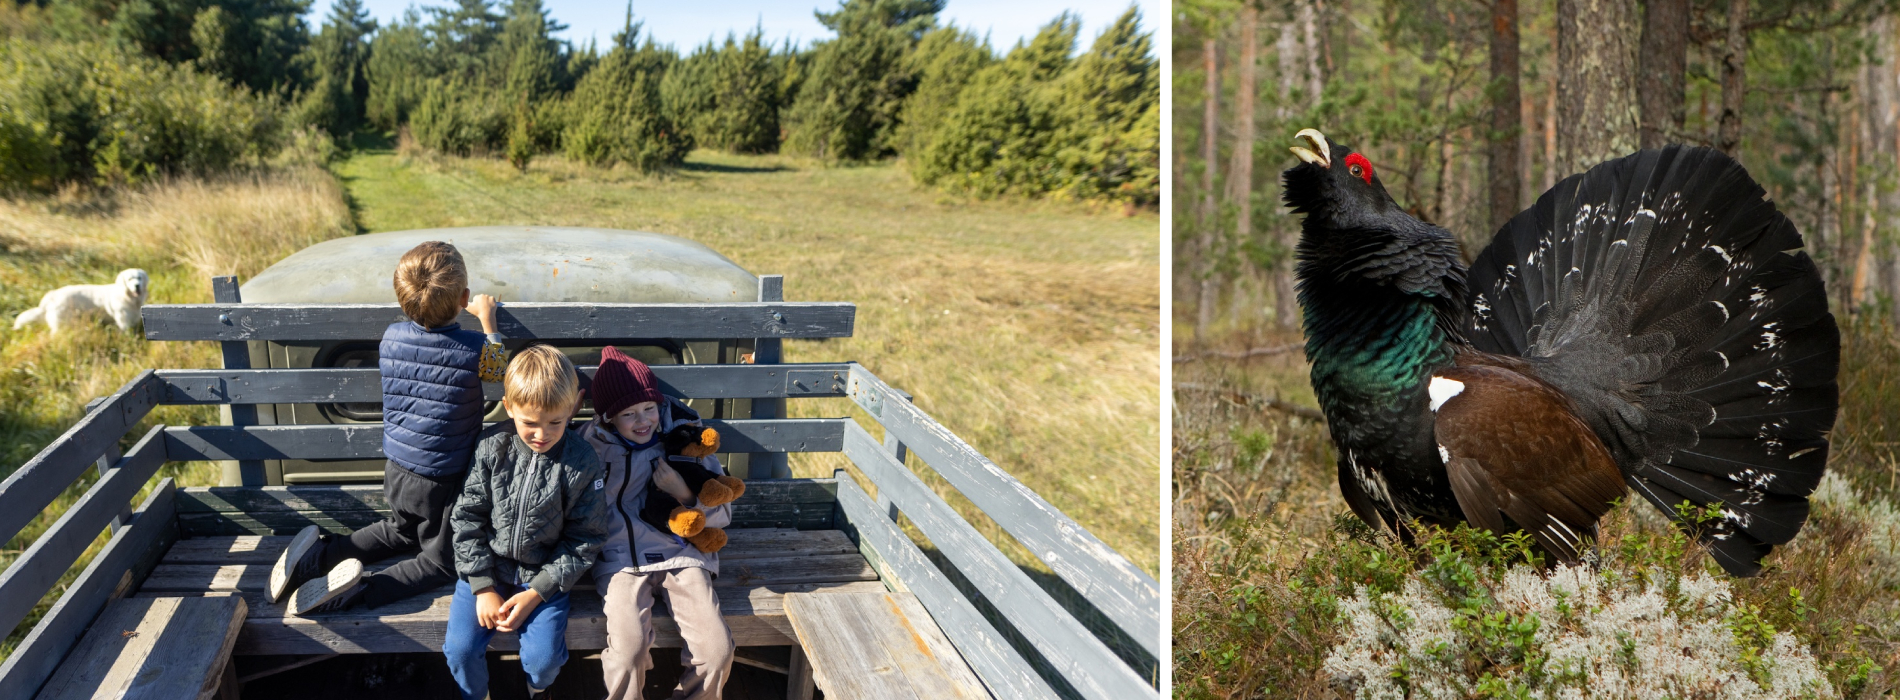 Kind und Vogel in der Natur Estlands